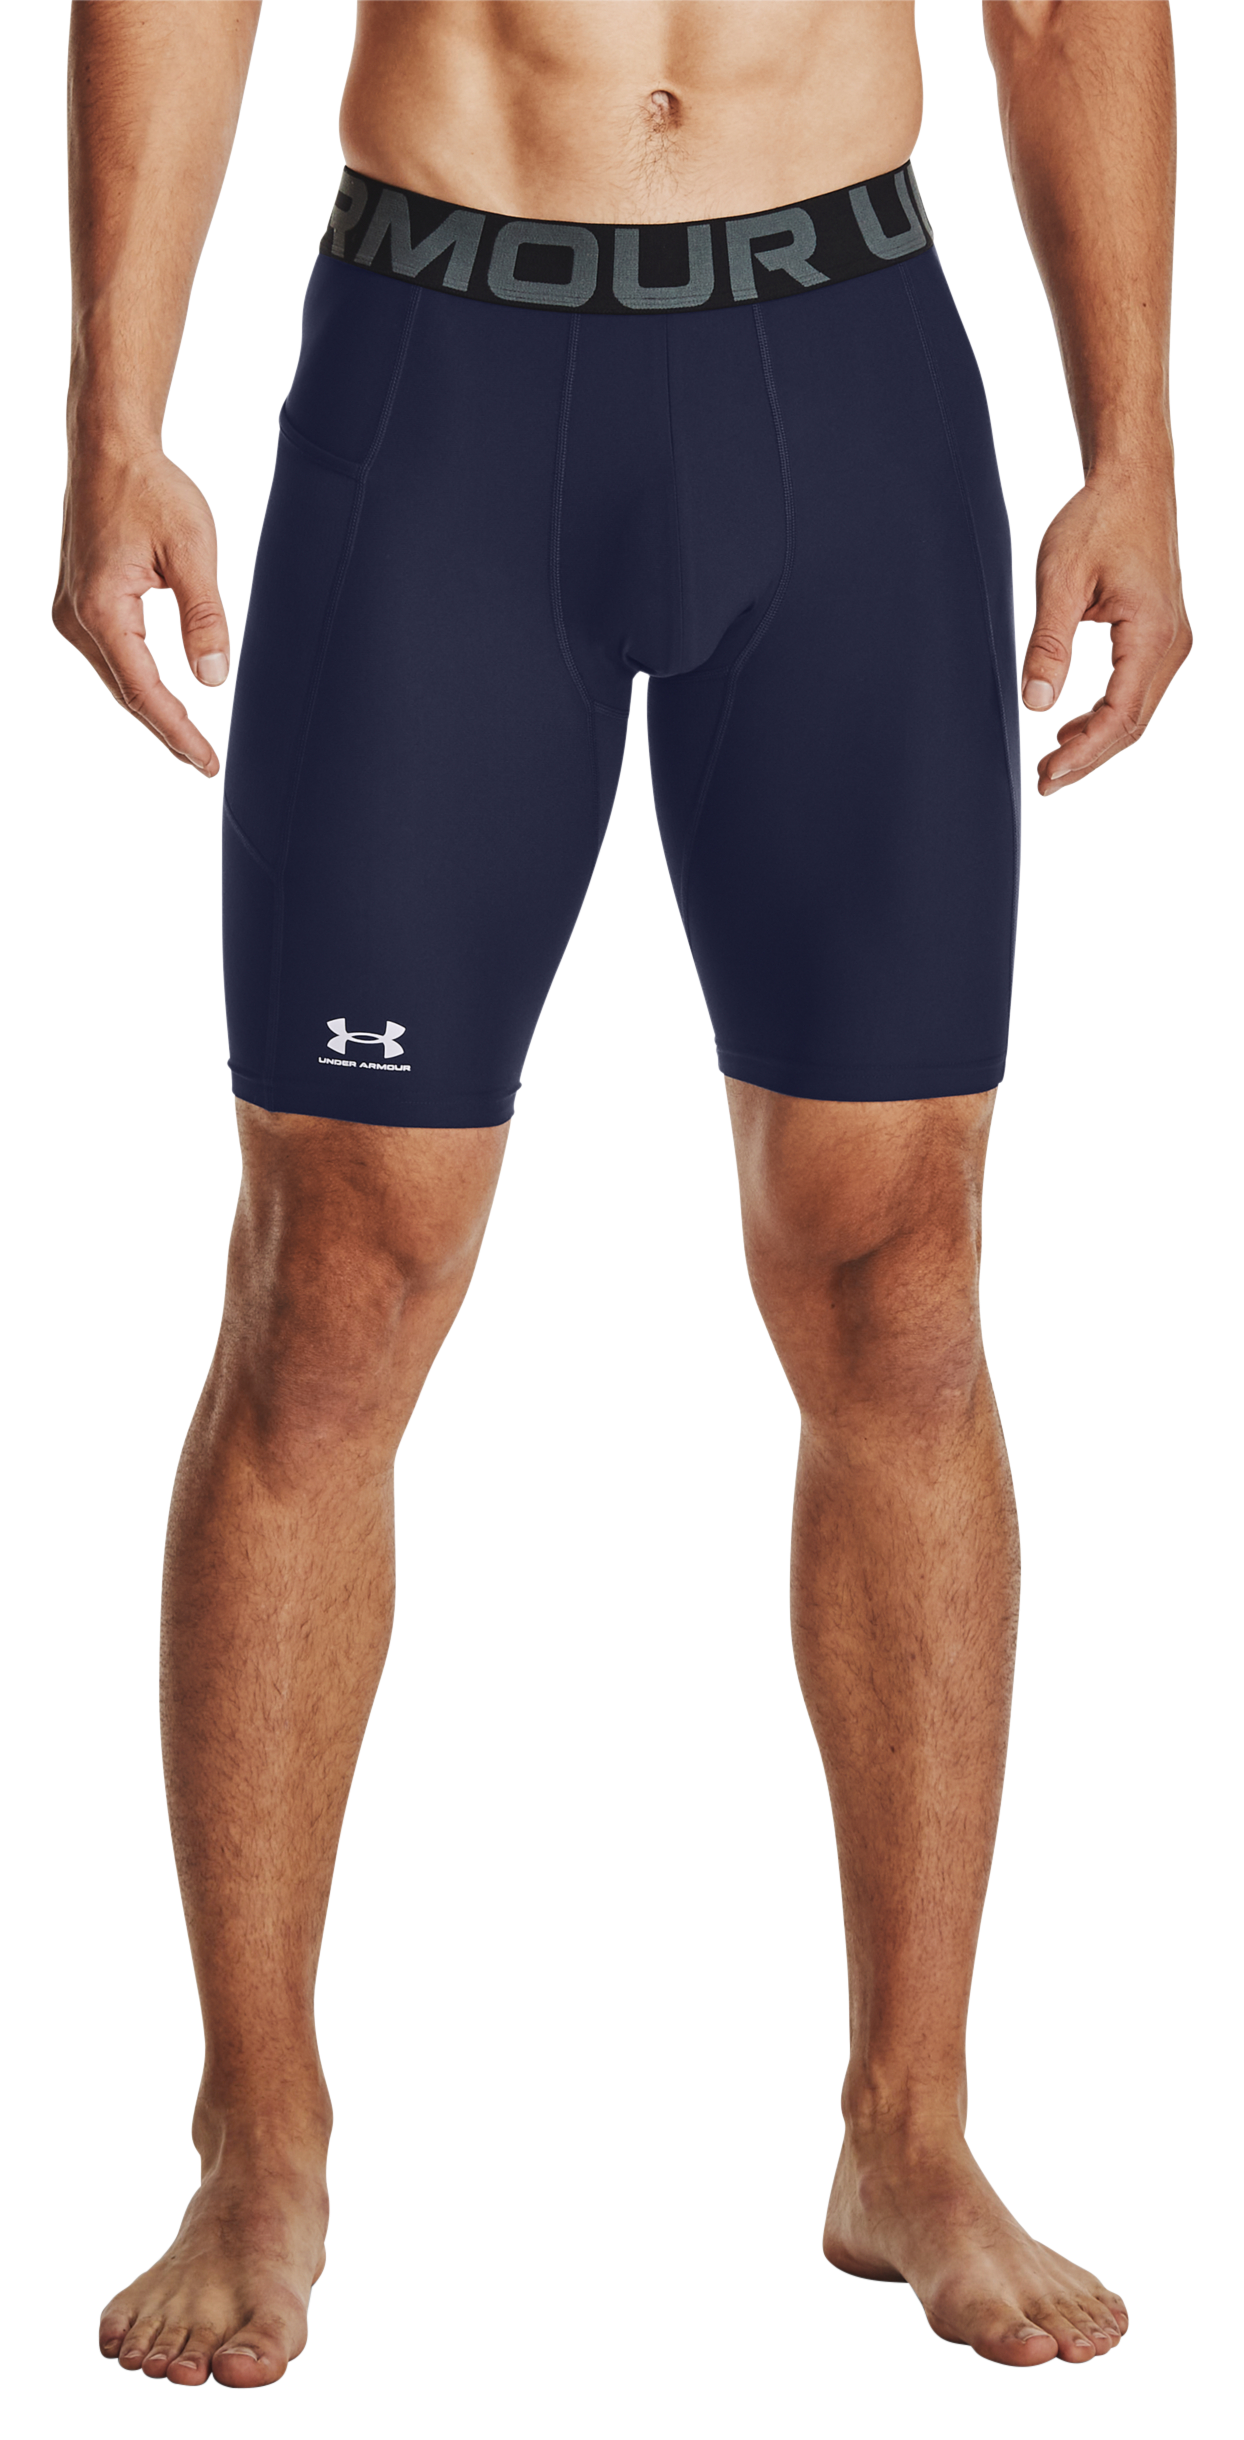 Under Armour HeatGear Pocket Long Shorts for Men - Midnight Navy/White - LT